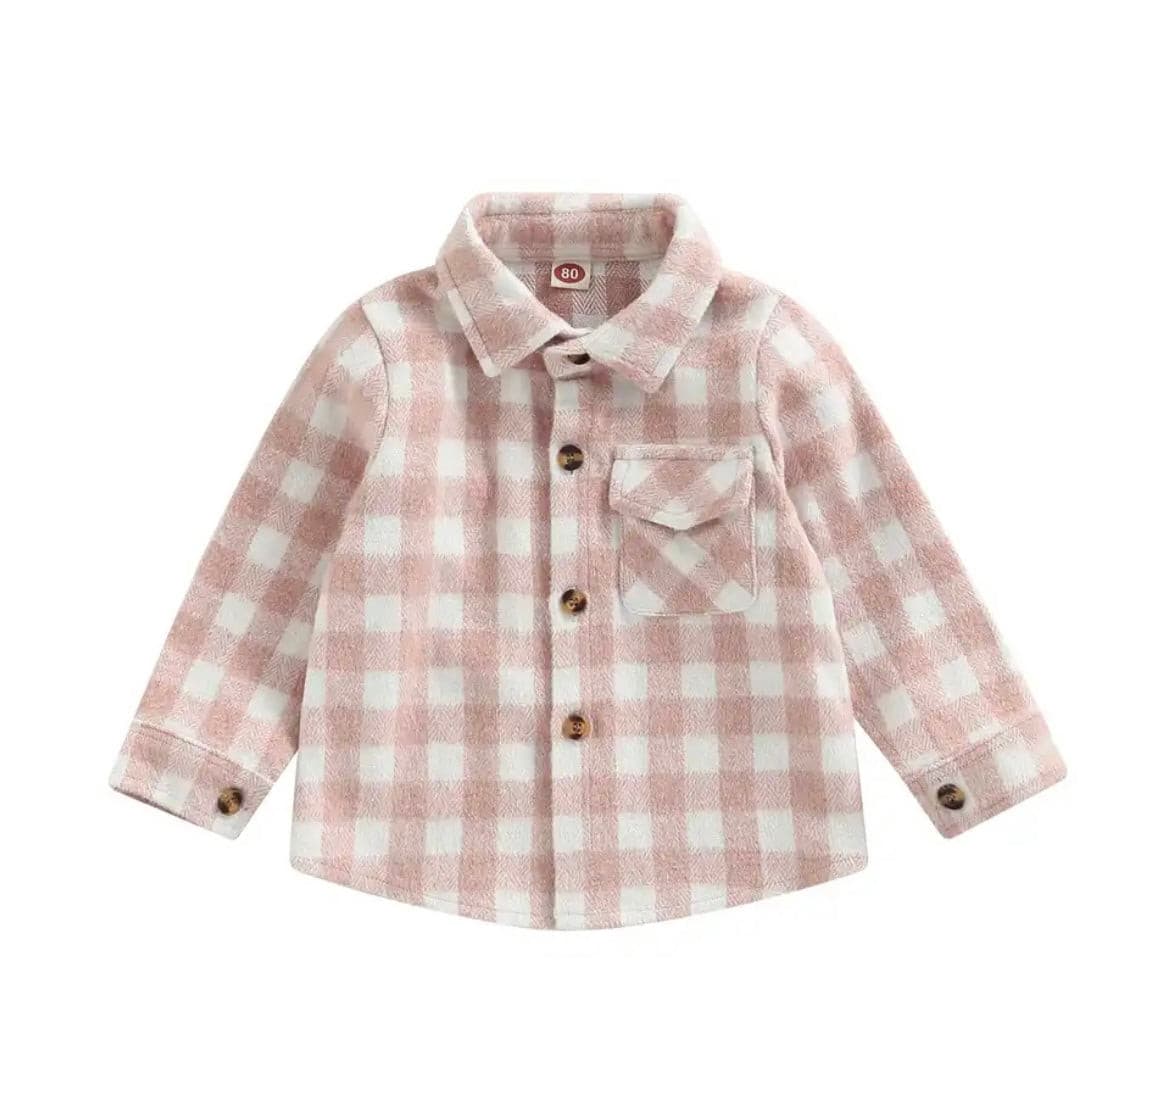 Girls Plaid Cotton Shirt - Pink Check.